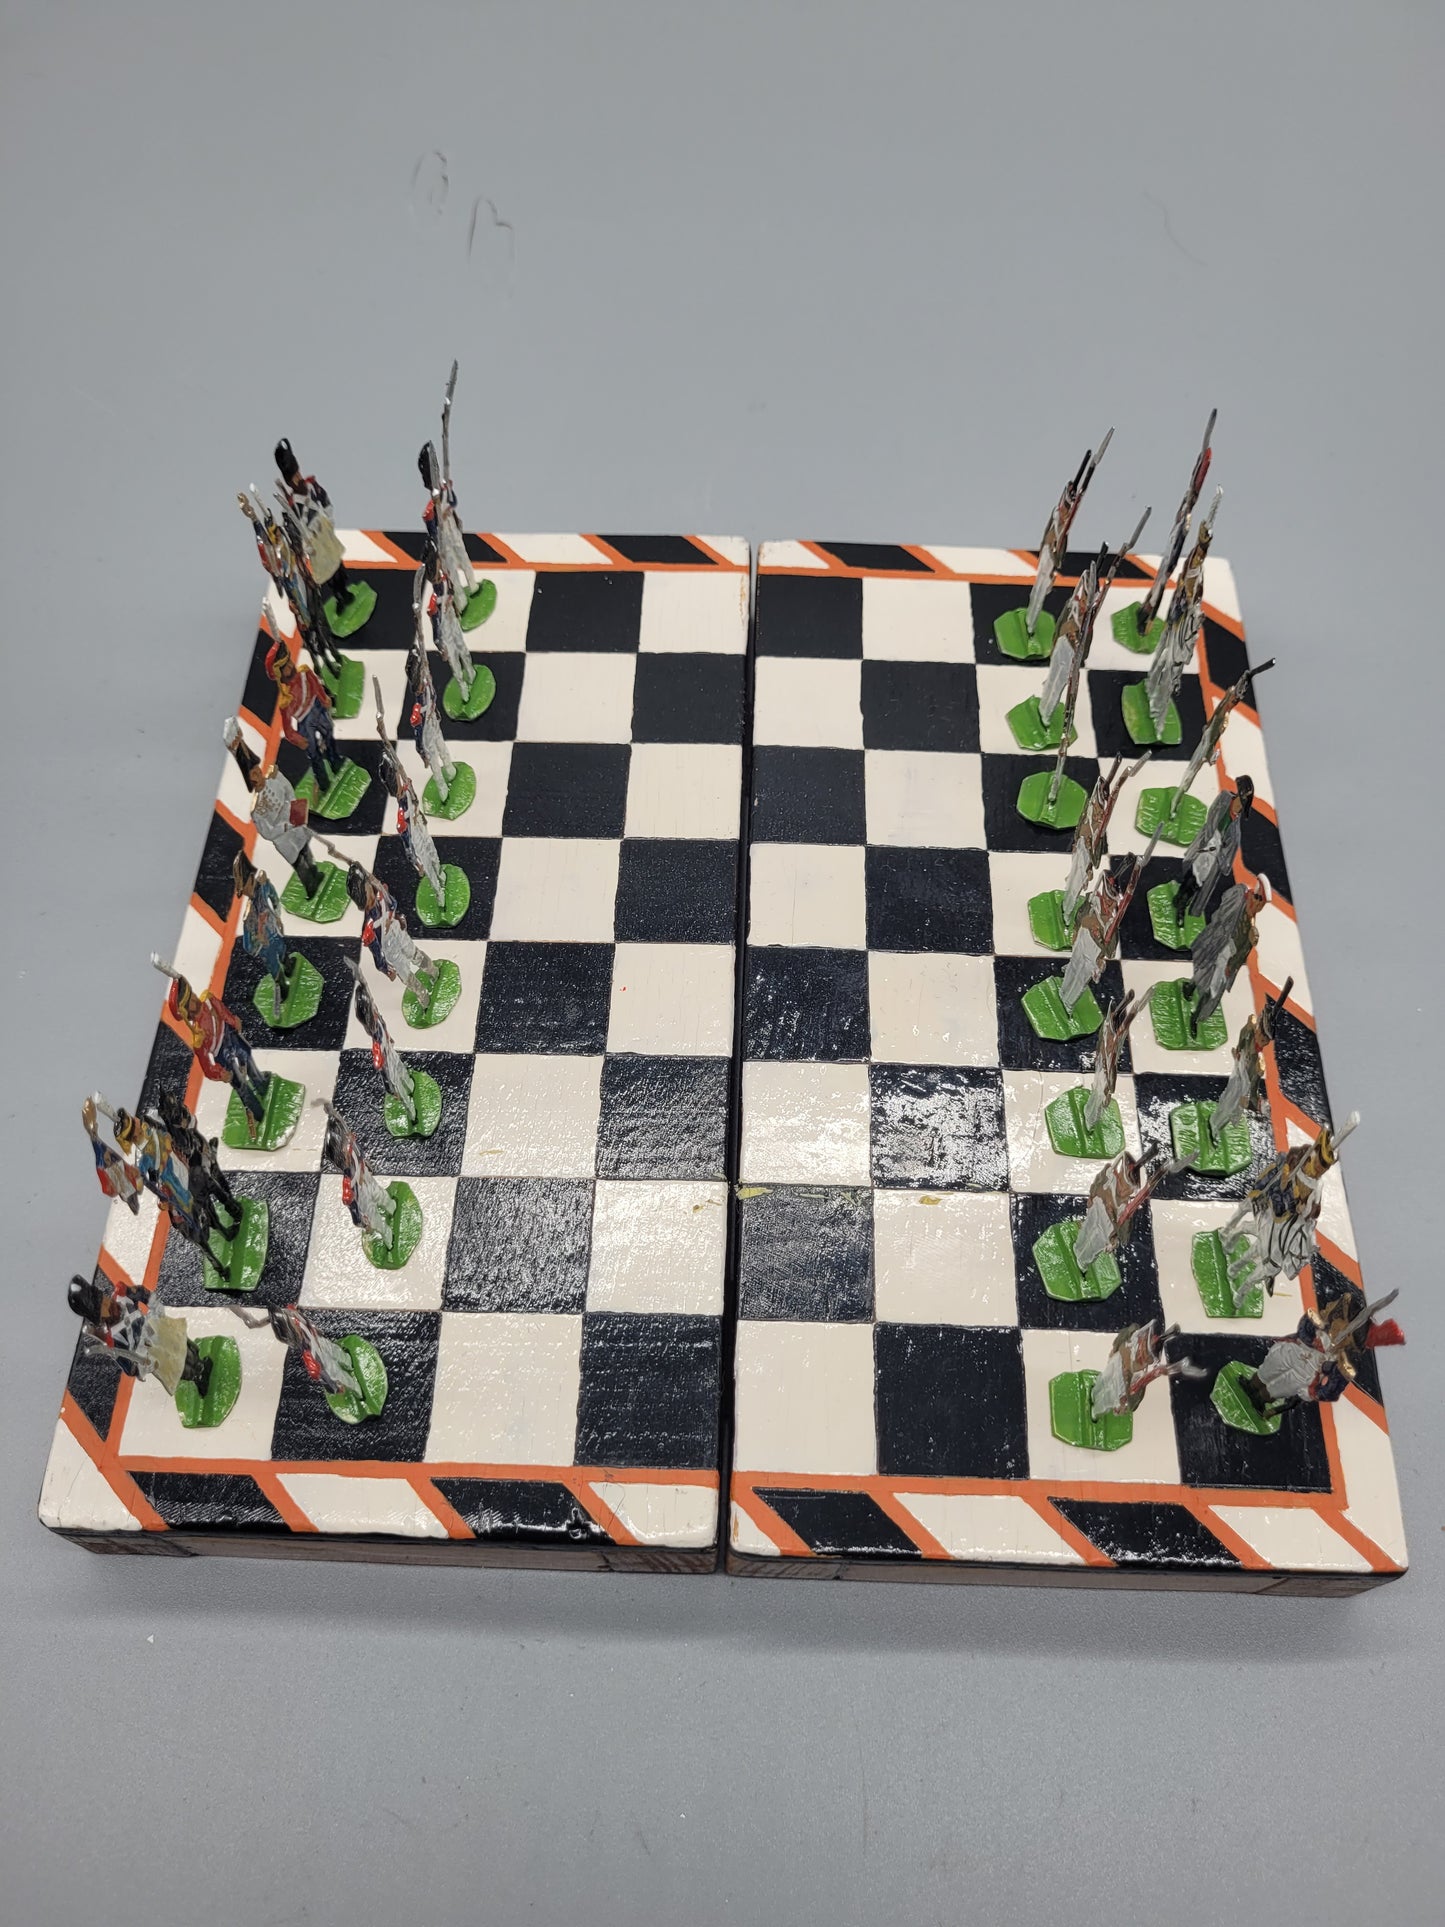 Antikes handgefertigtes Schachspiel Set mit 32 Schachfiguren